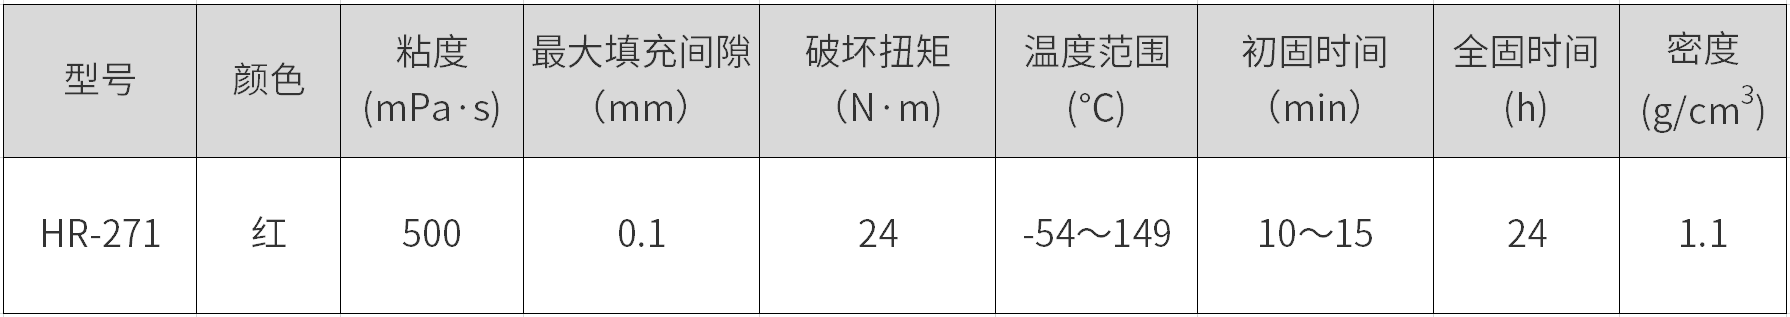 HR-271是环氧丙稀酸酯型摩登7平台